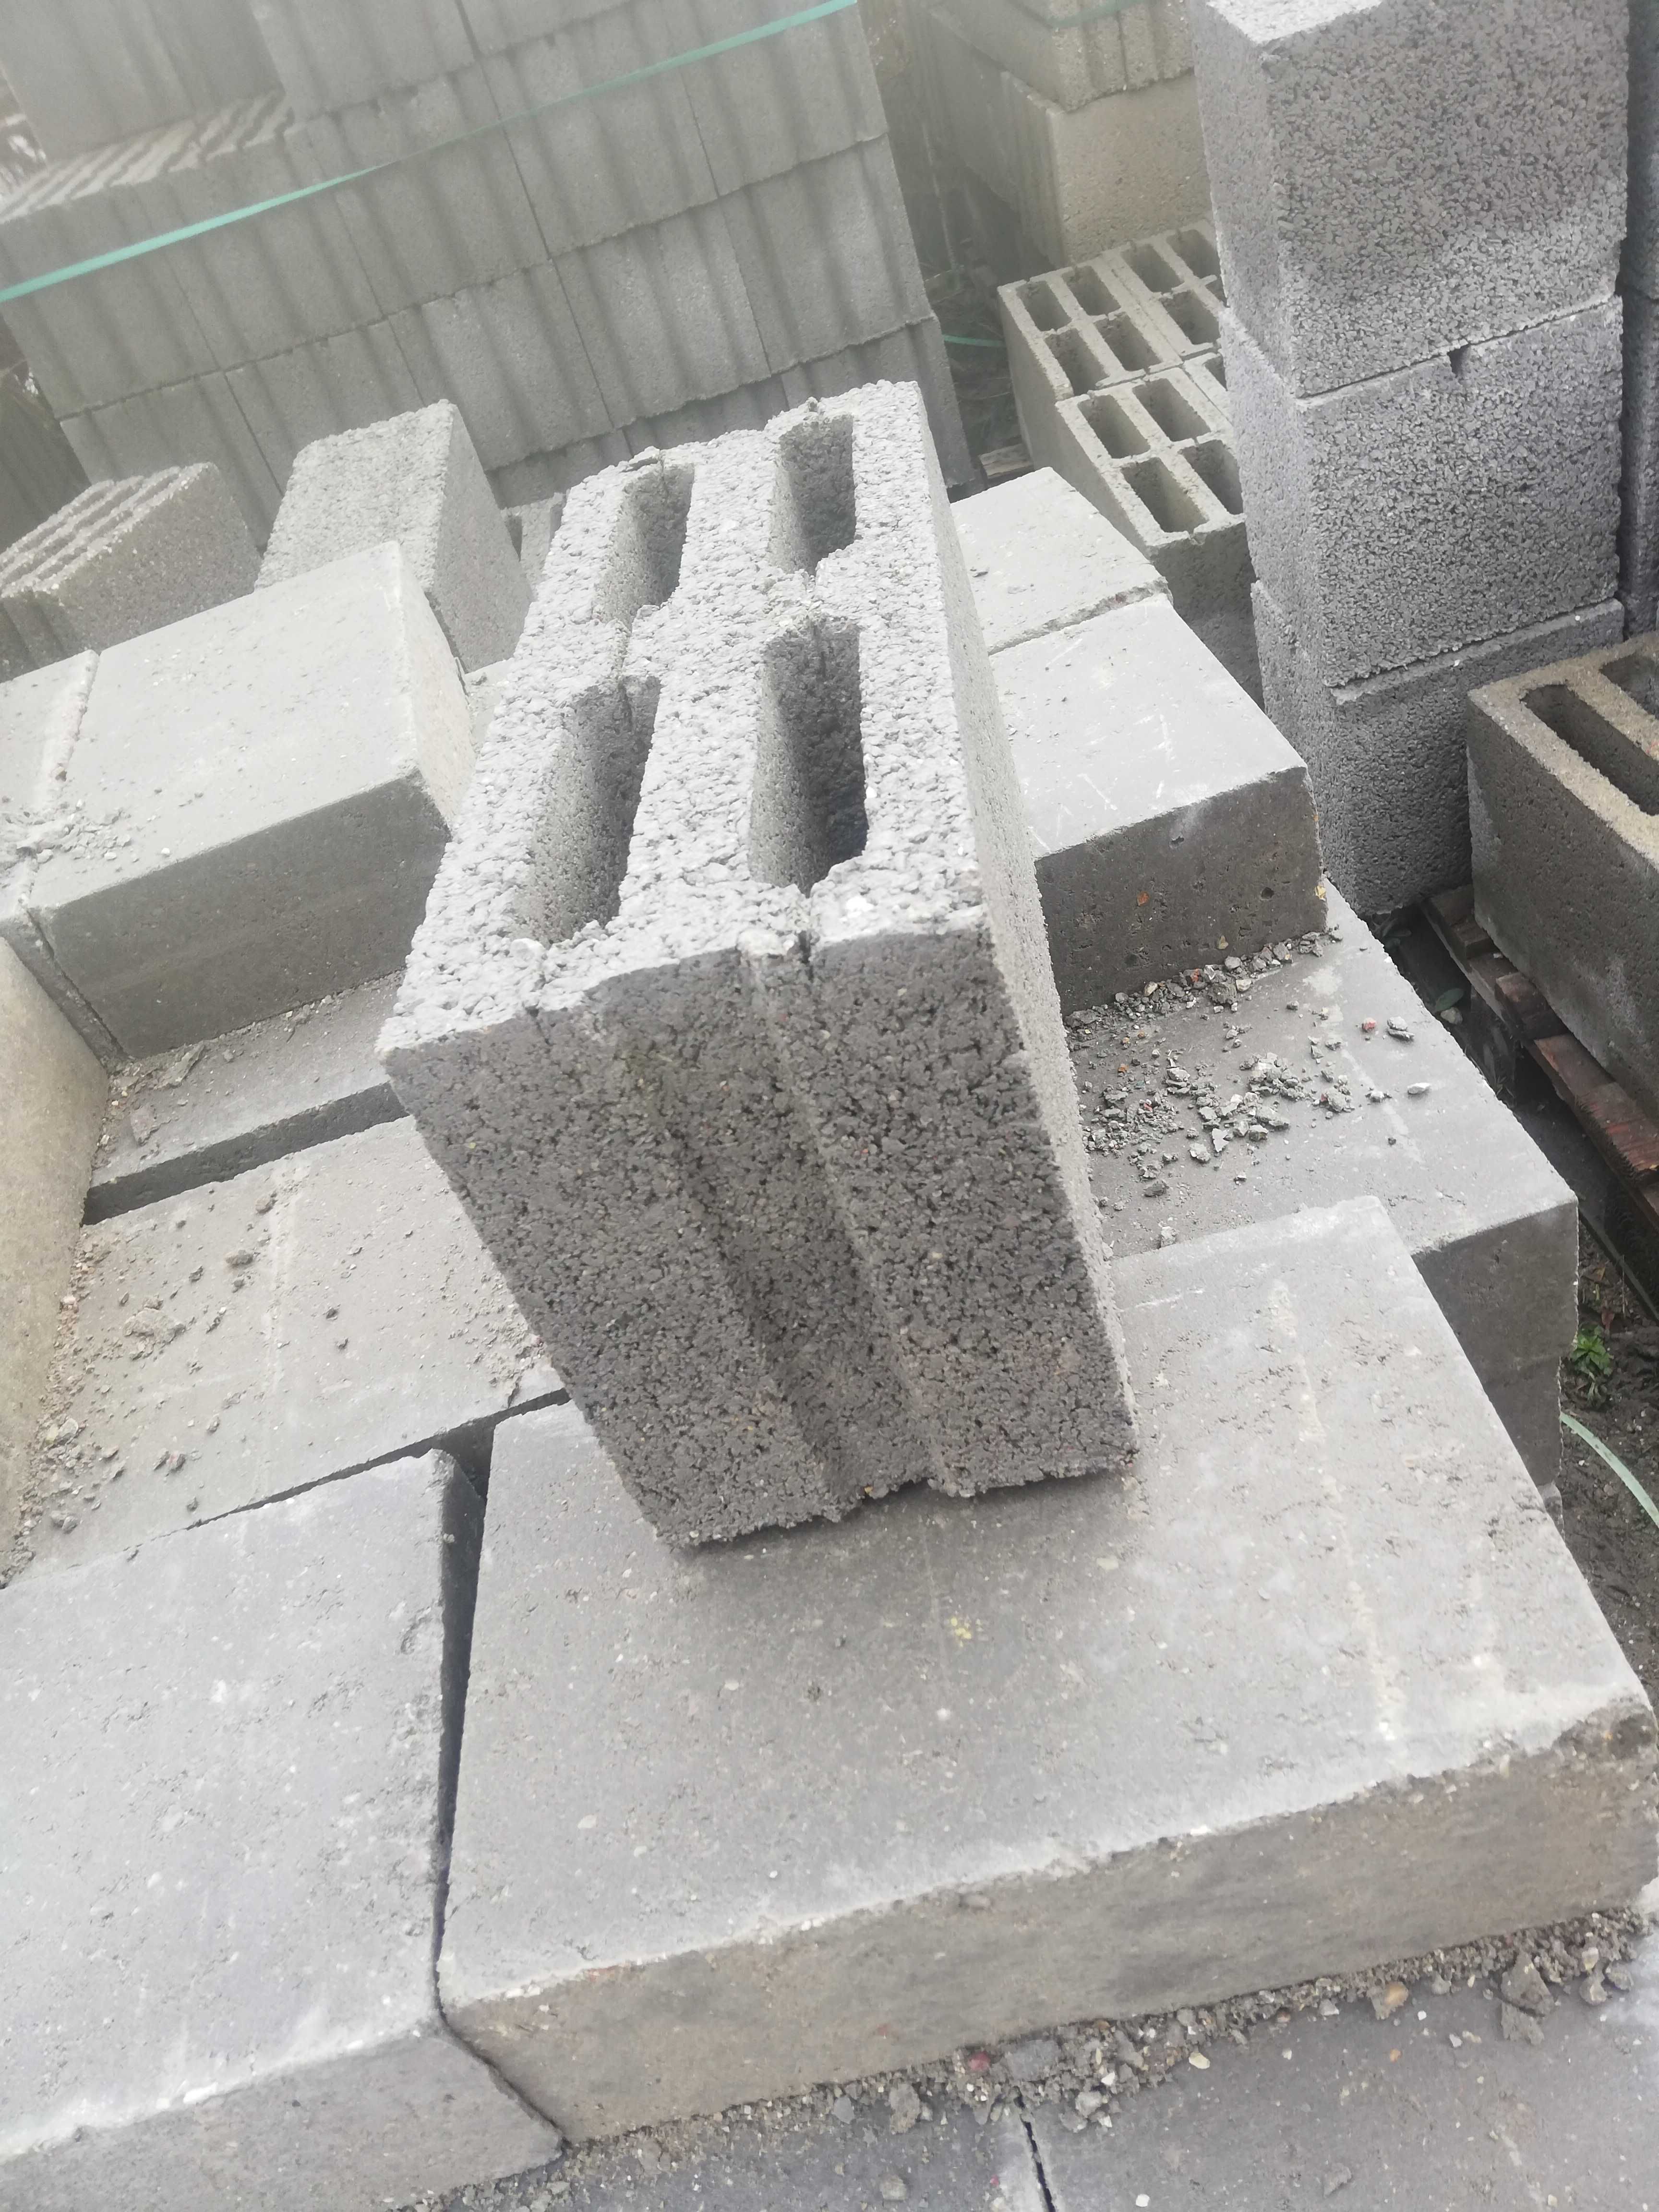 pustaki betonowo-żużlowe 19 x 19 x 39; 24 x 24 x 49